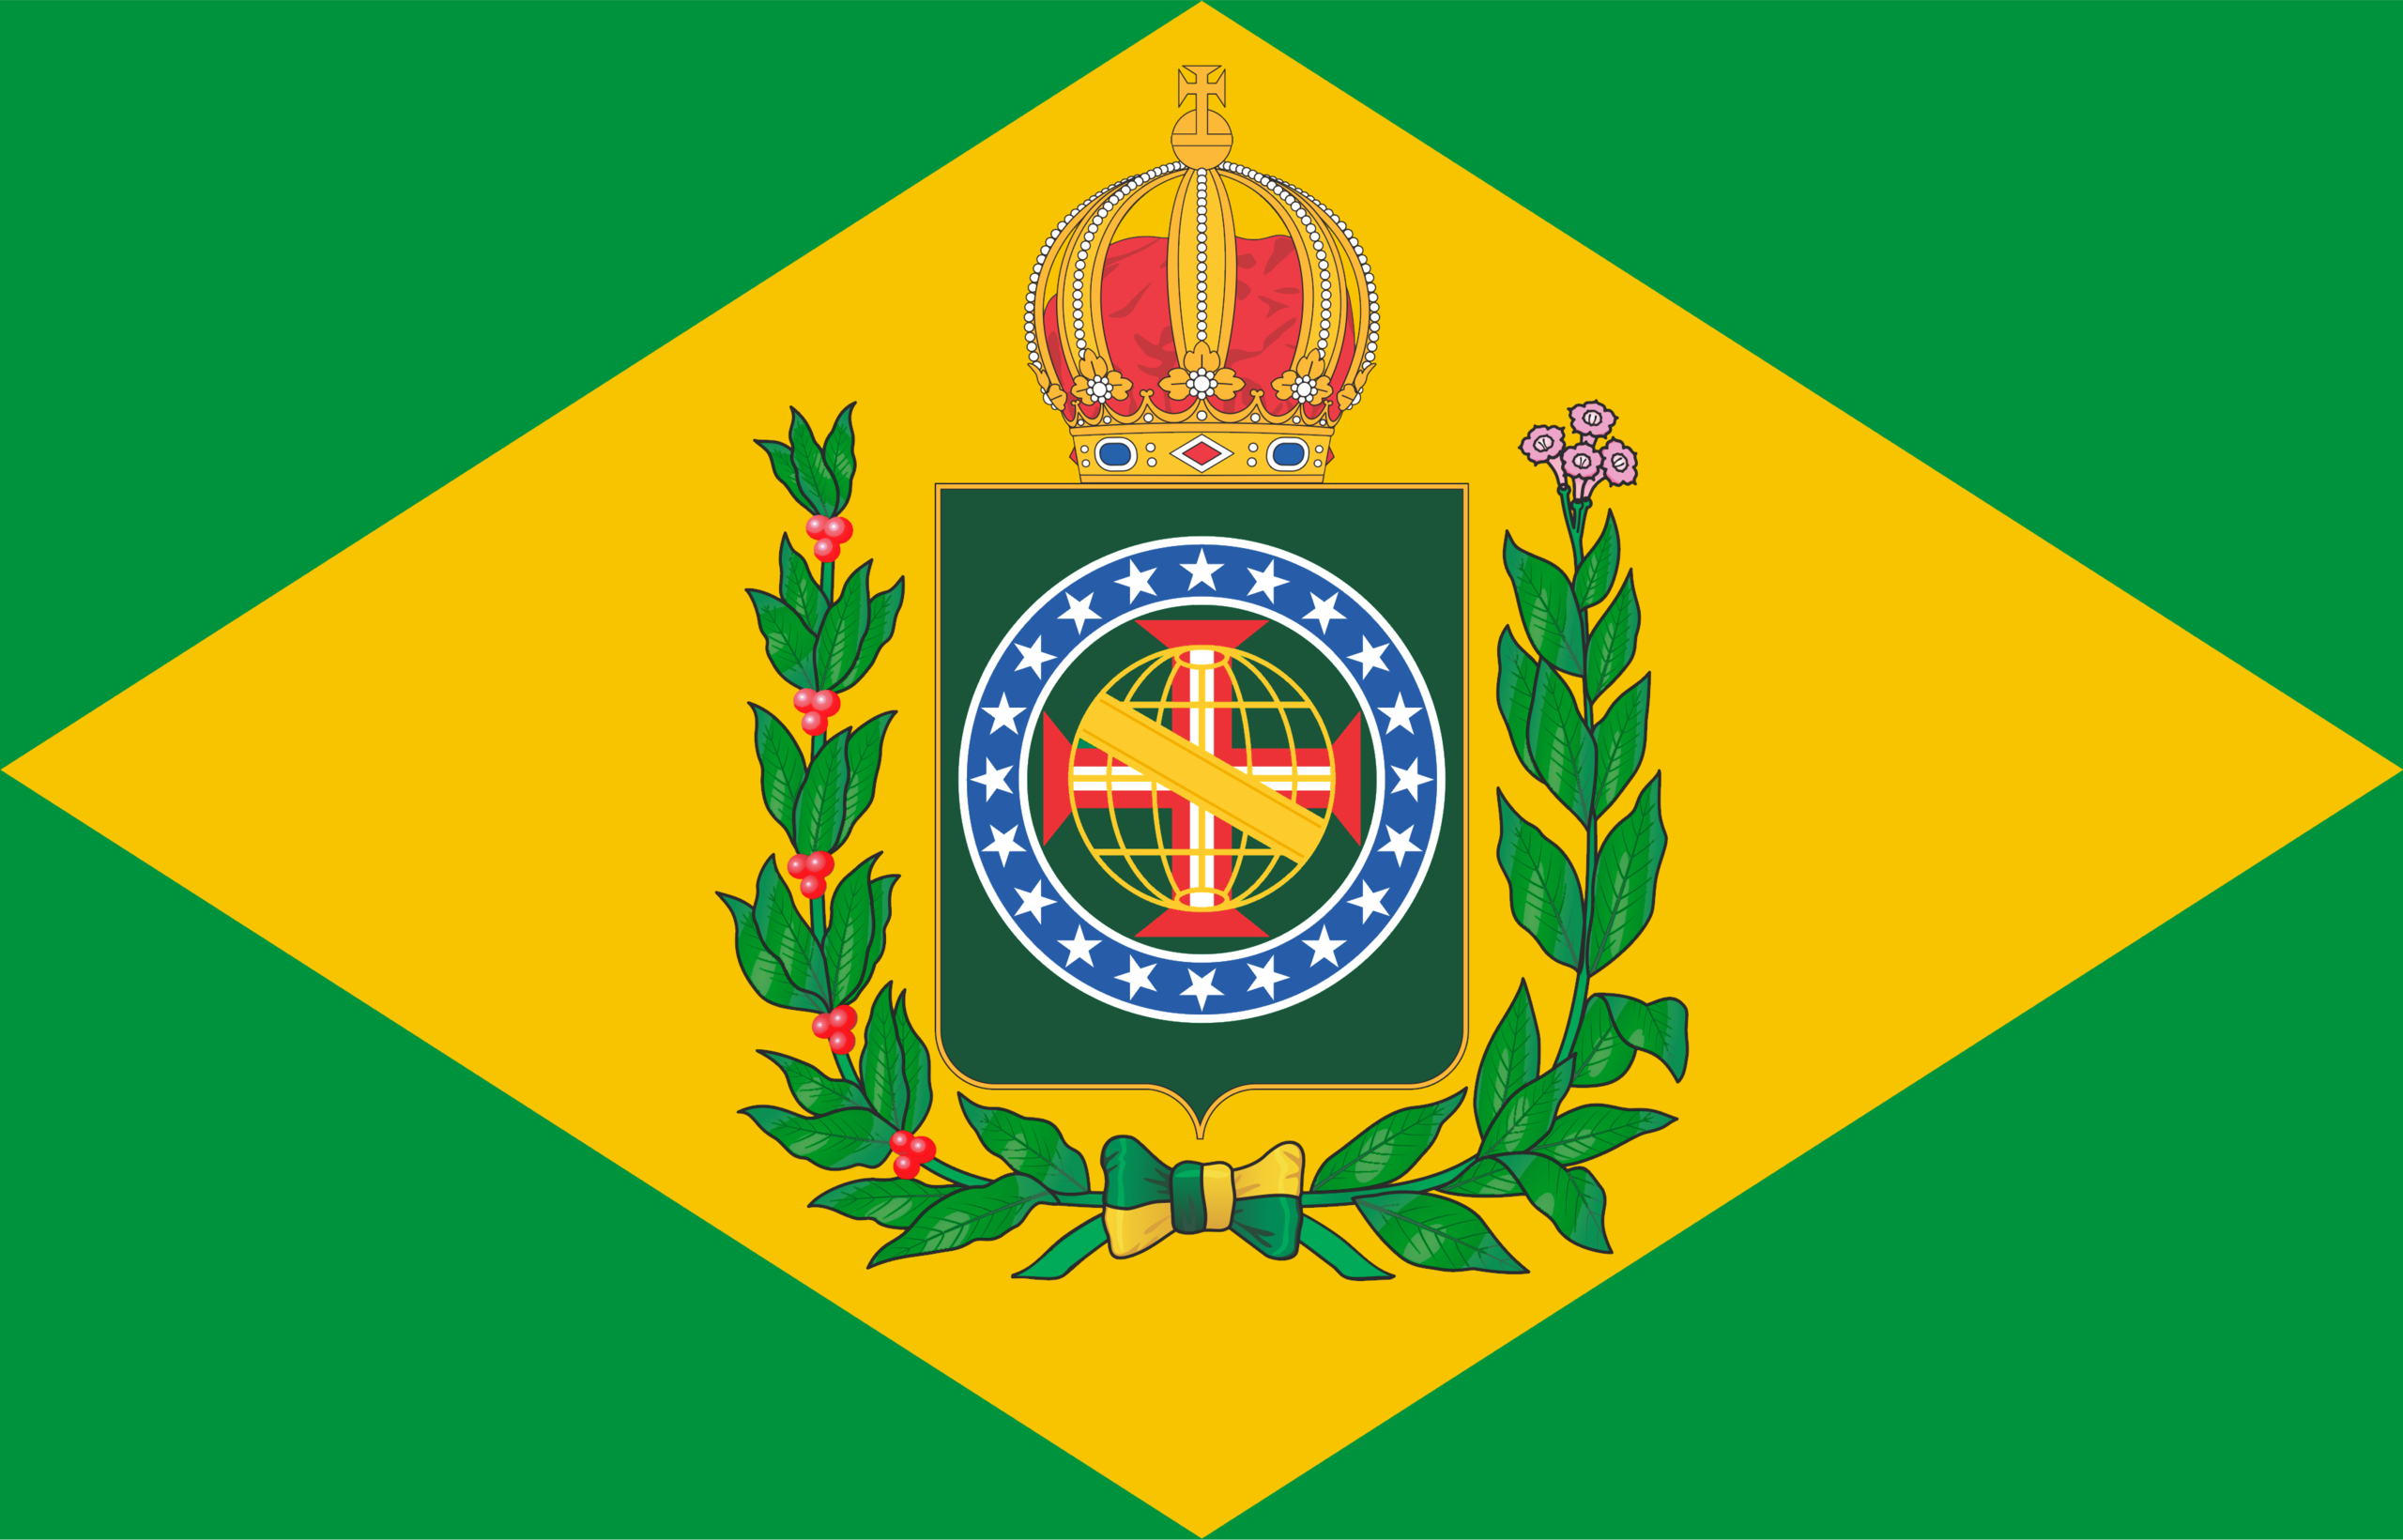 https://upload.wikimedia.org/wikipedia/commons/thumb/e/ea/Bandeira_do_Imp%C3%A9rio_do_Brasil_com_n%C3%B3_e_cores_corretos.png/2560px-Bandeira_do_Imp%C3%A9rio_do_Brasil_com_n%C3%B3_e_cores_corretos.png